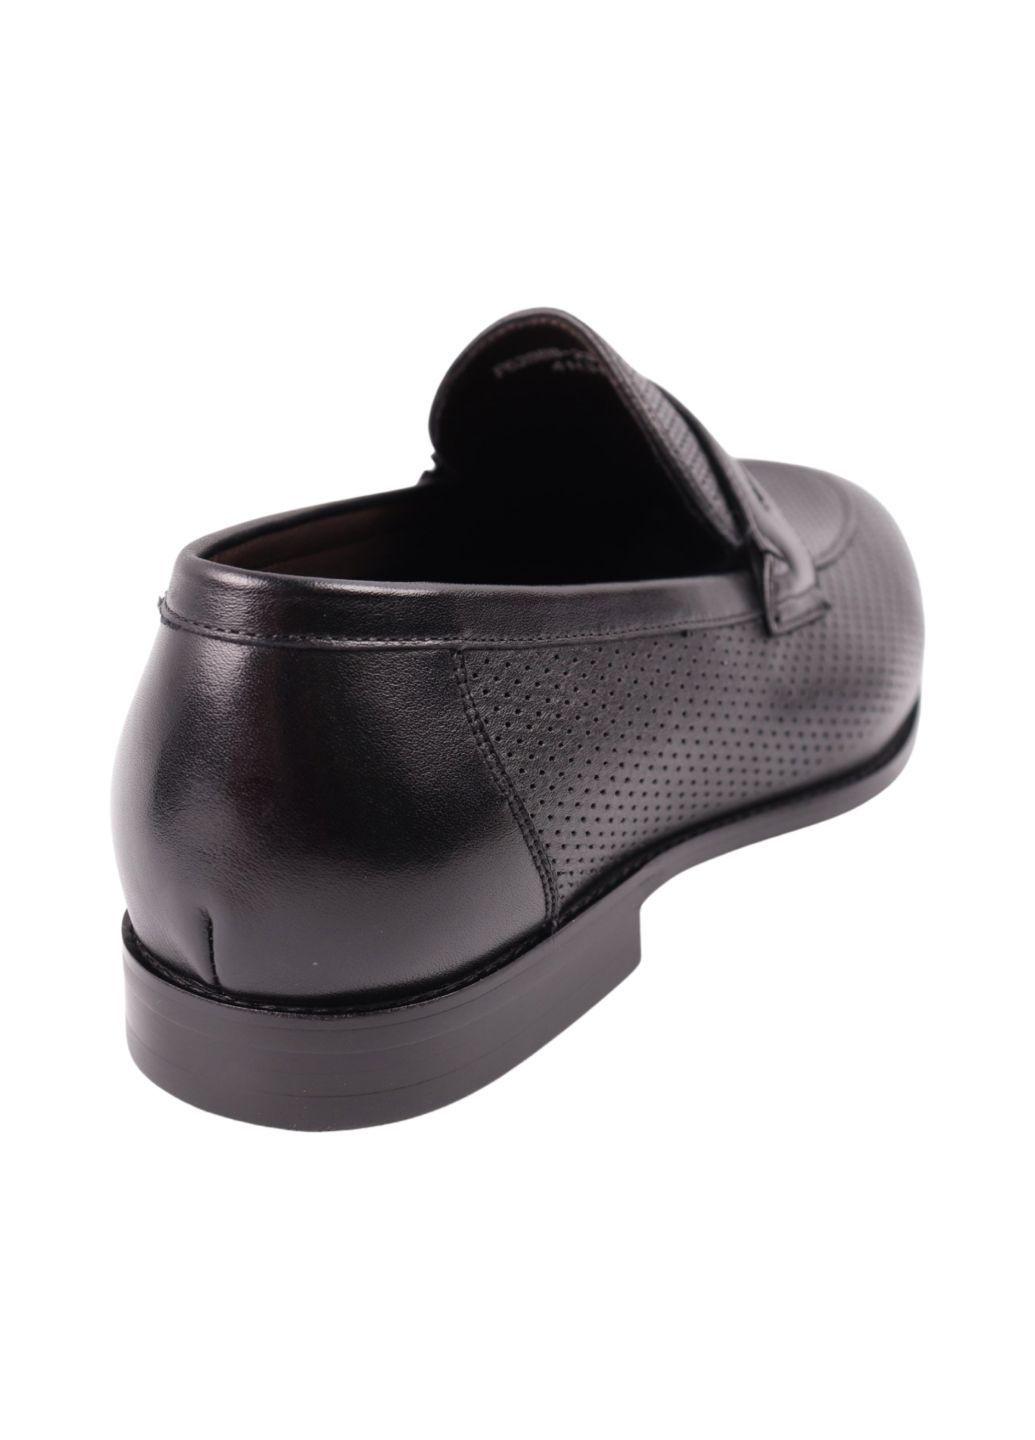 Туфлі чоловічі Lido Marinozi чорні натуральна шкіра Lido Marinozzi 342-24ltp (280361326)